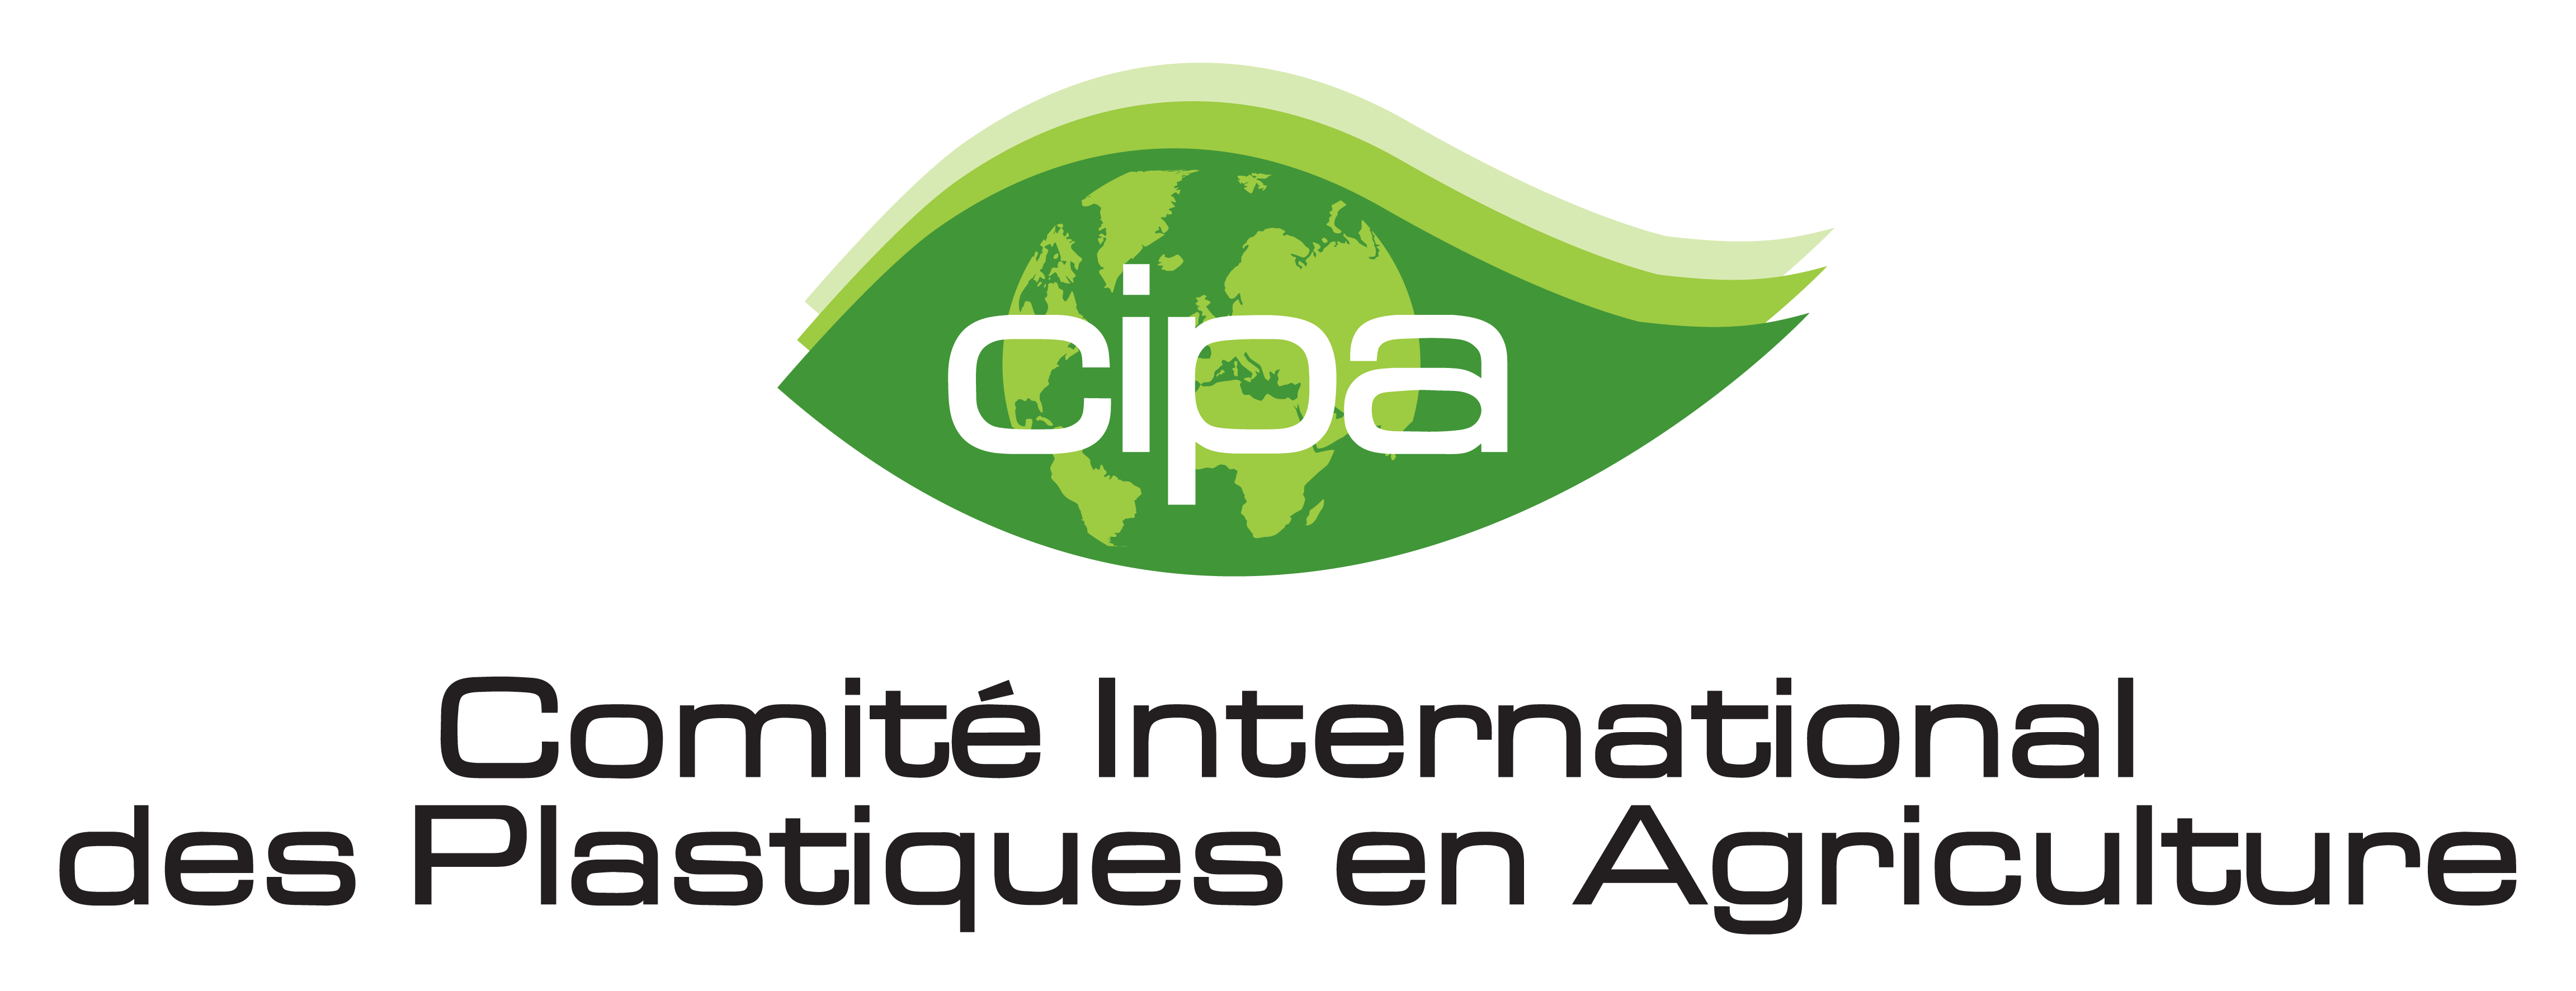 CIPA - Comité International des Plastiques en Agriculture